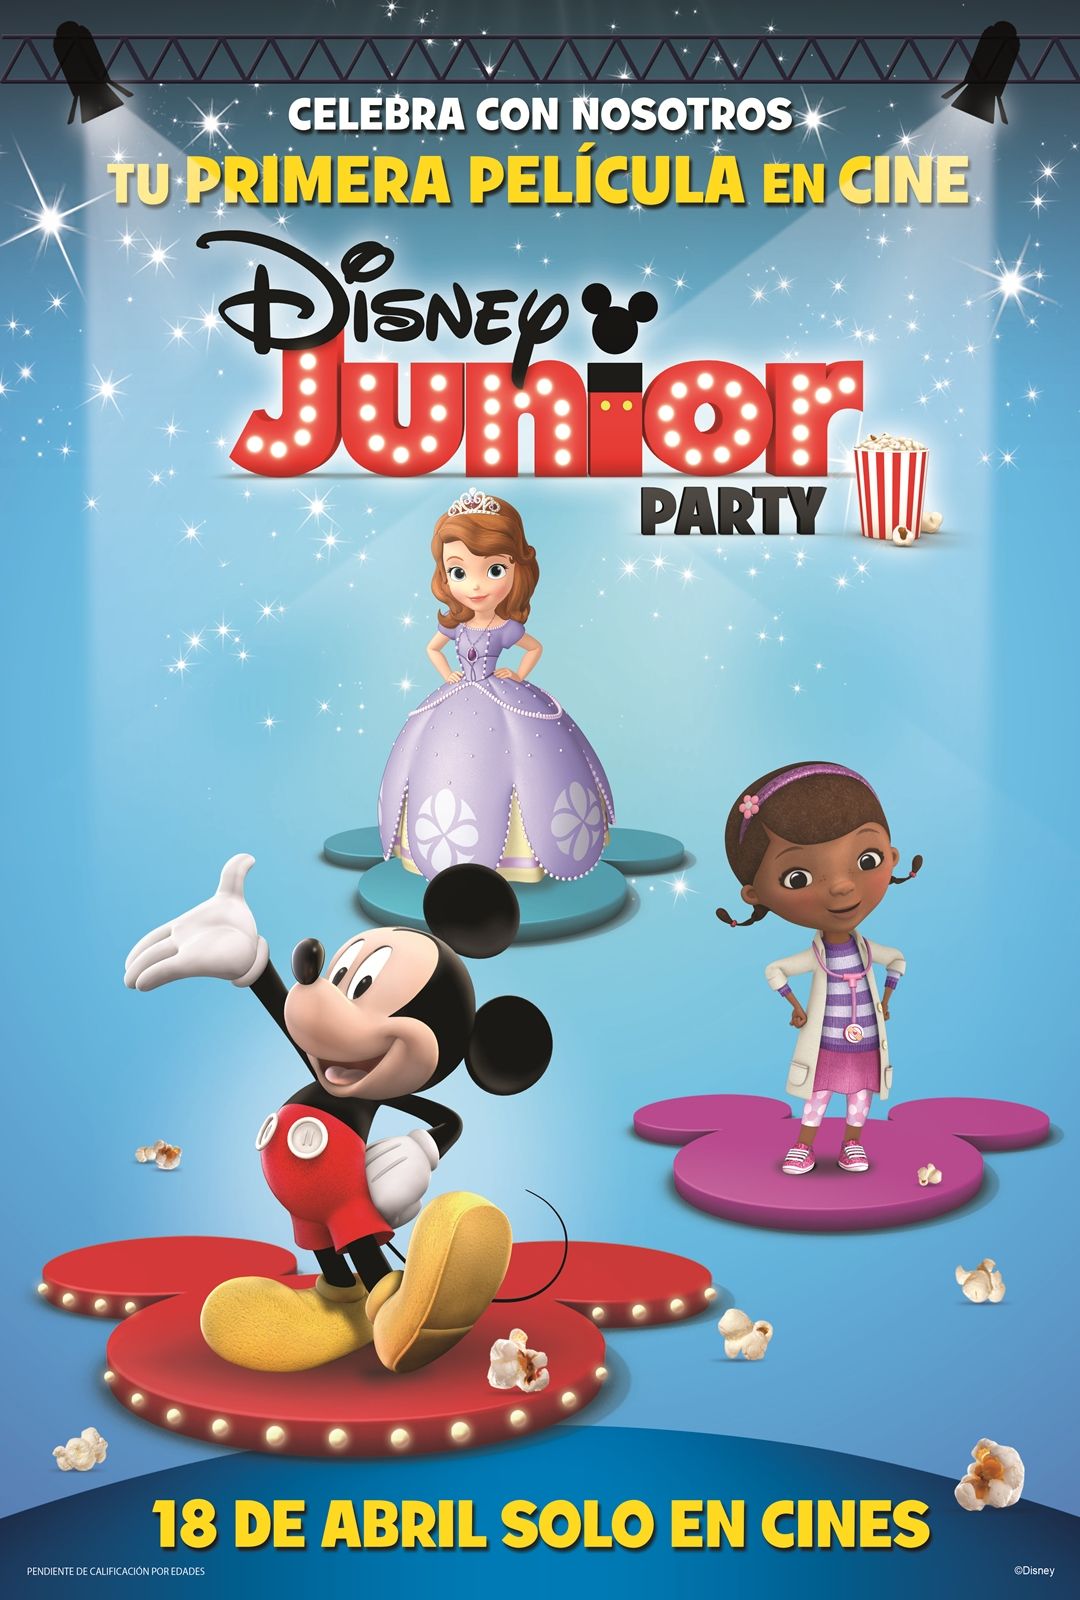 Disney estrena la película interactiva niños de preescolar